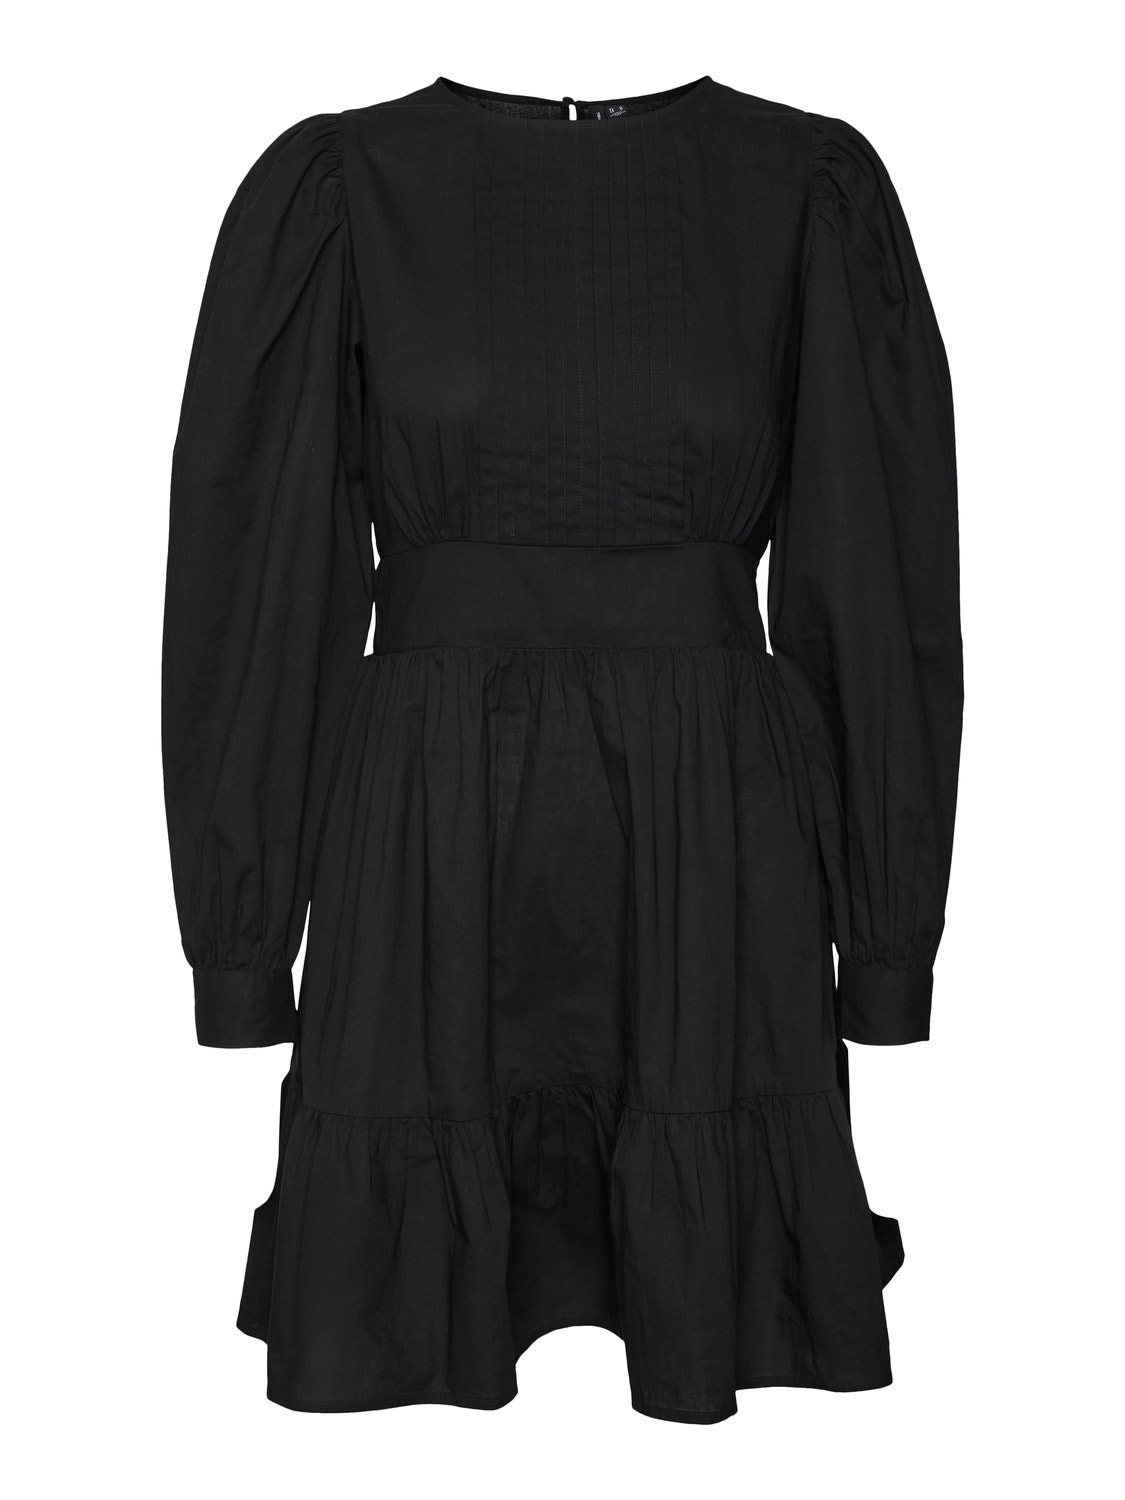 Vero Moda VMLILA Short dress -Black - 10311373